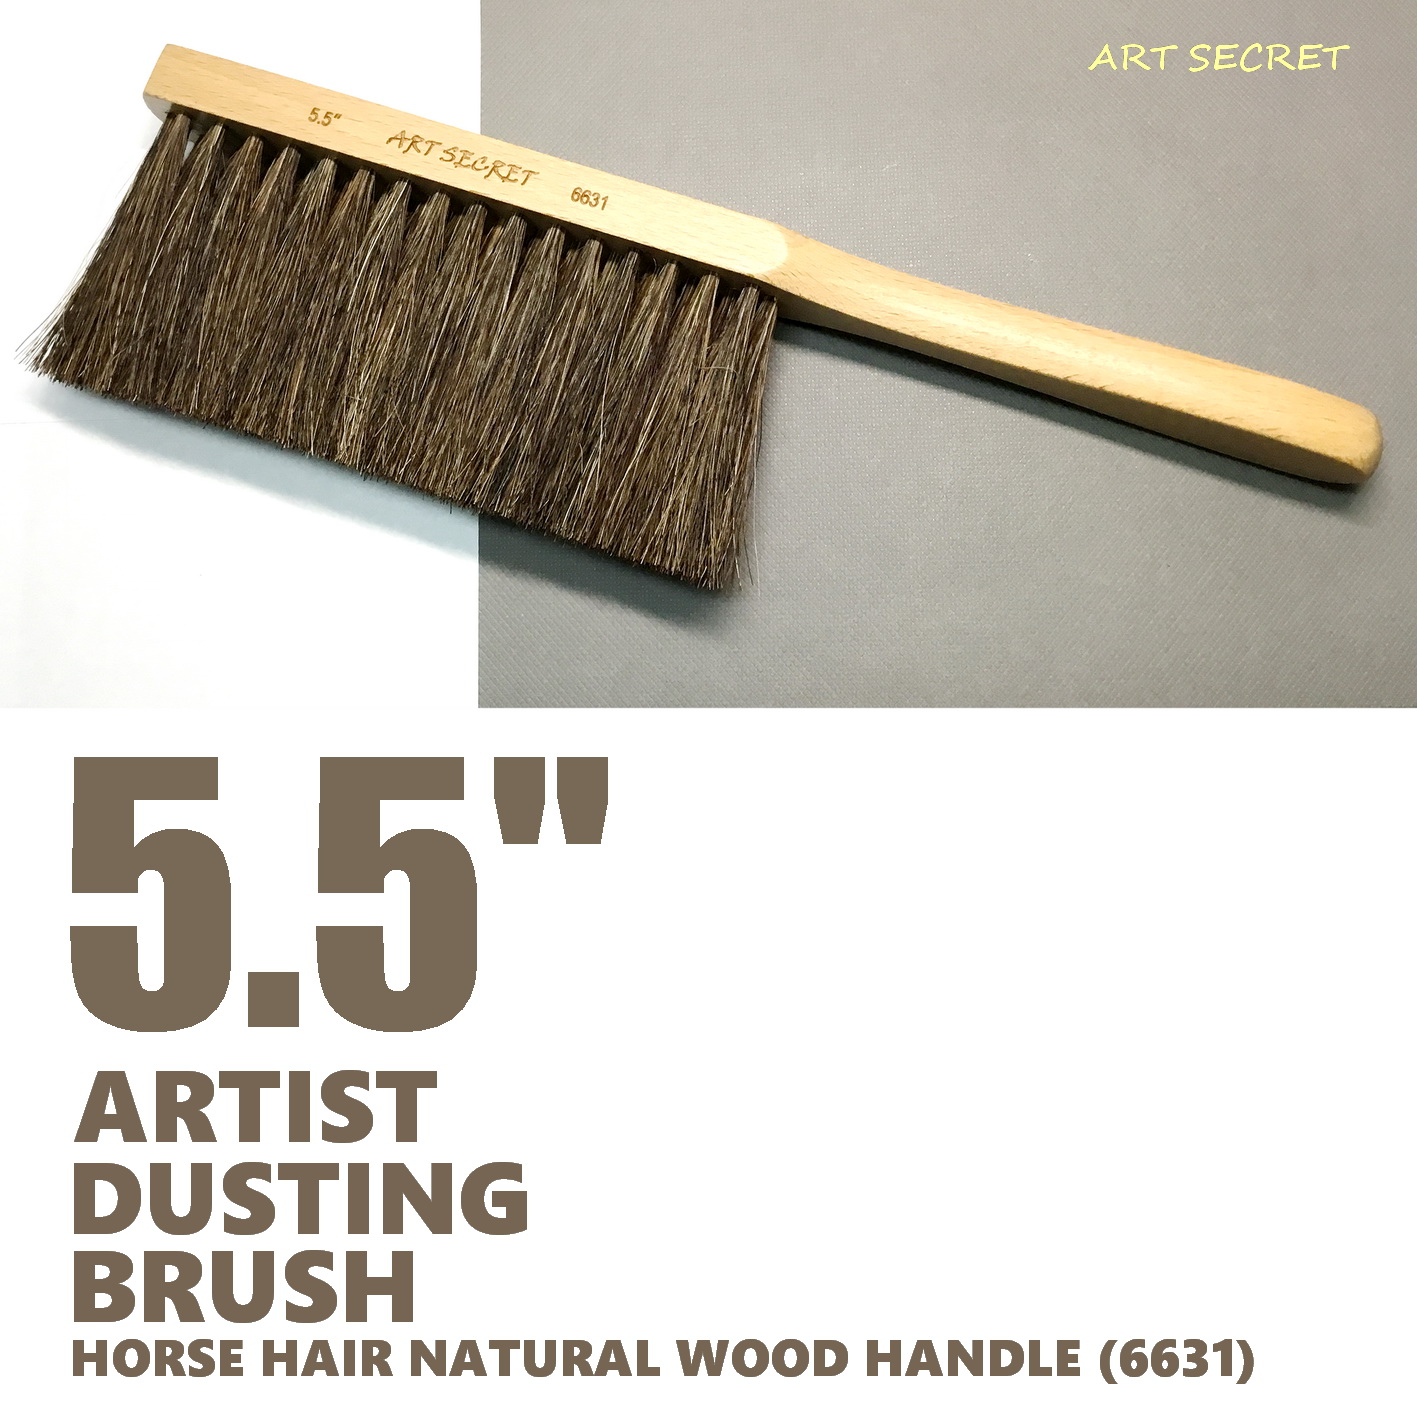 ART SECRET 8 inch Artist DUSTING BRUSH, Drafting Brush, Sweep